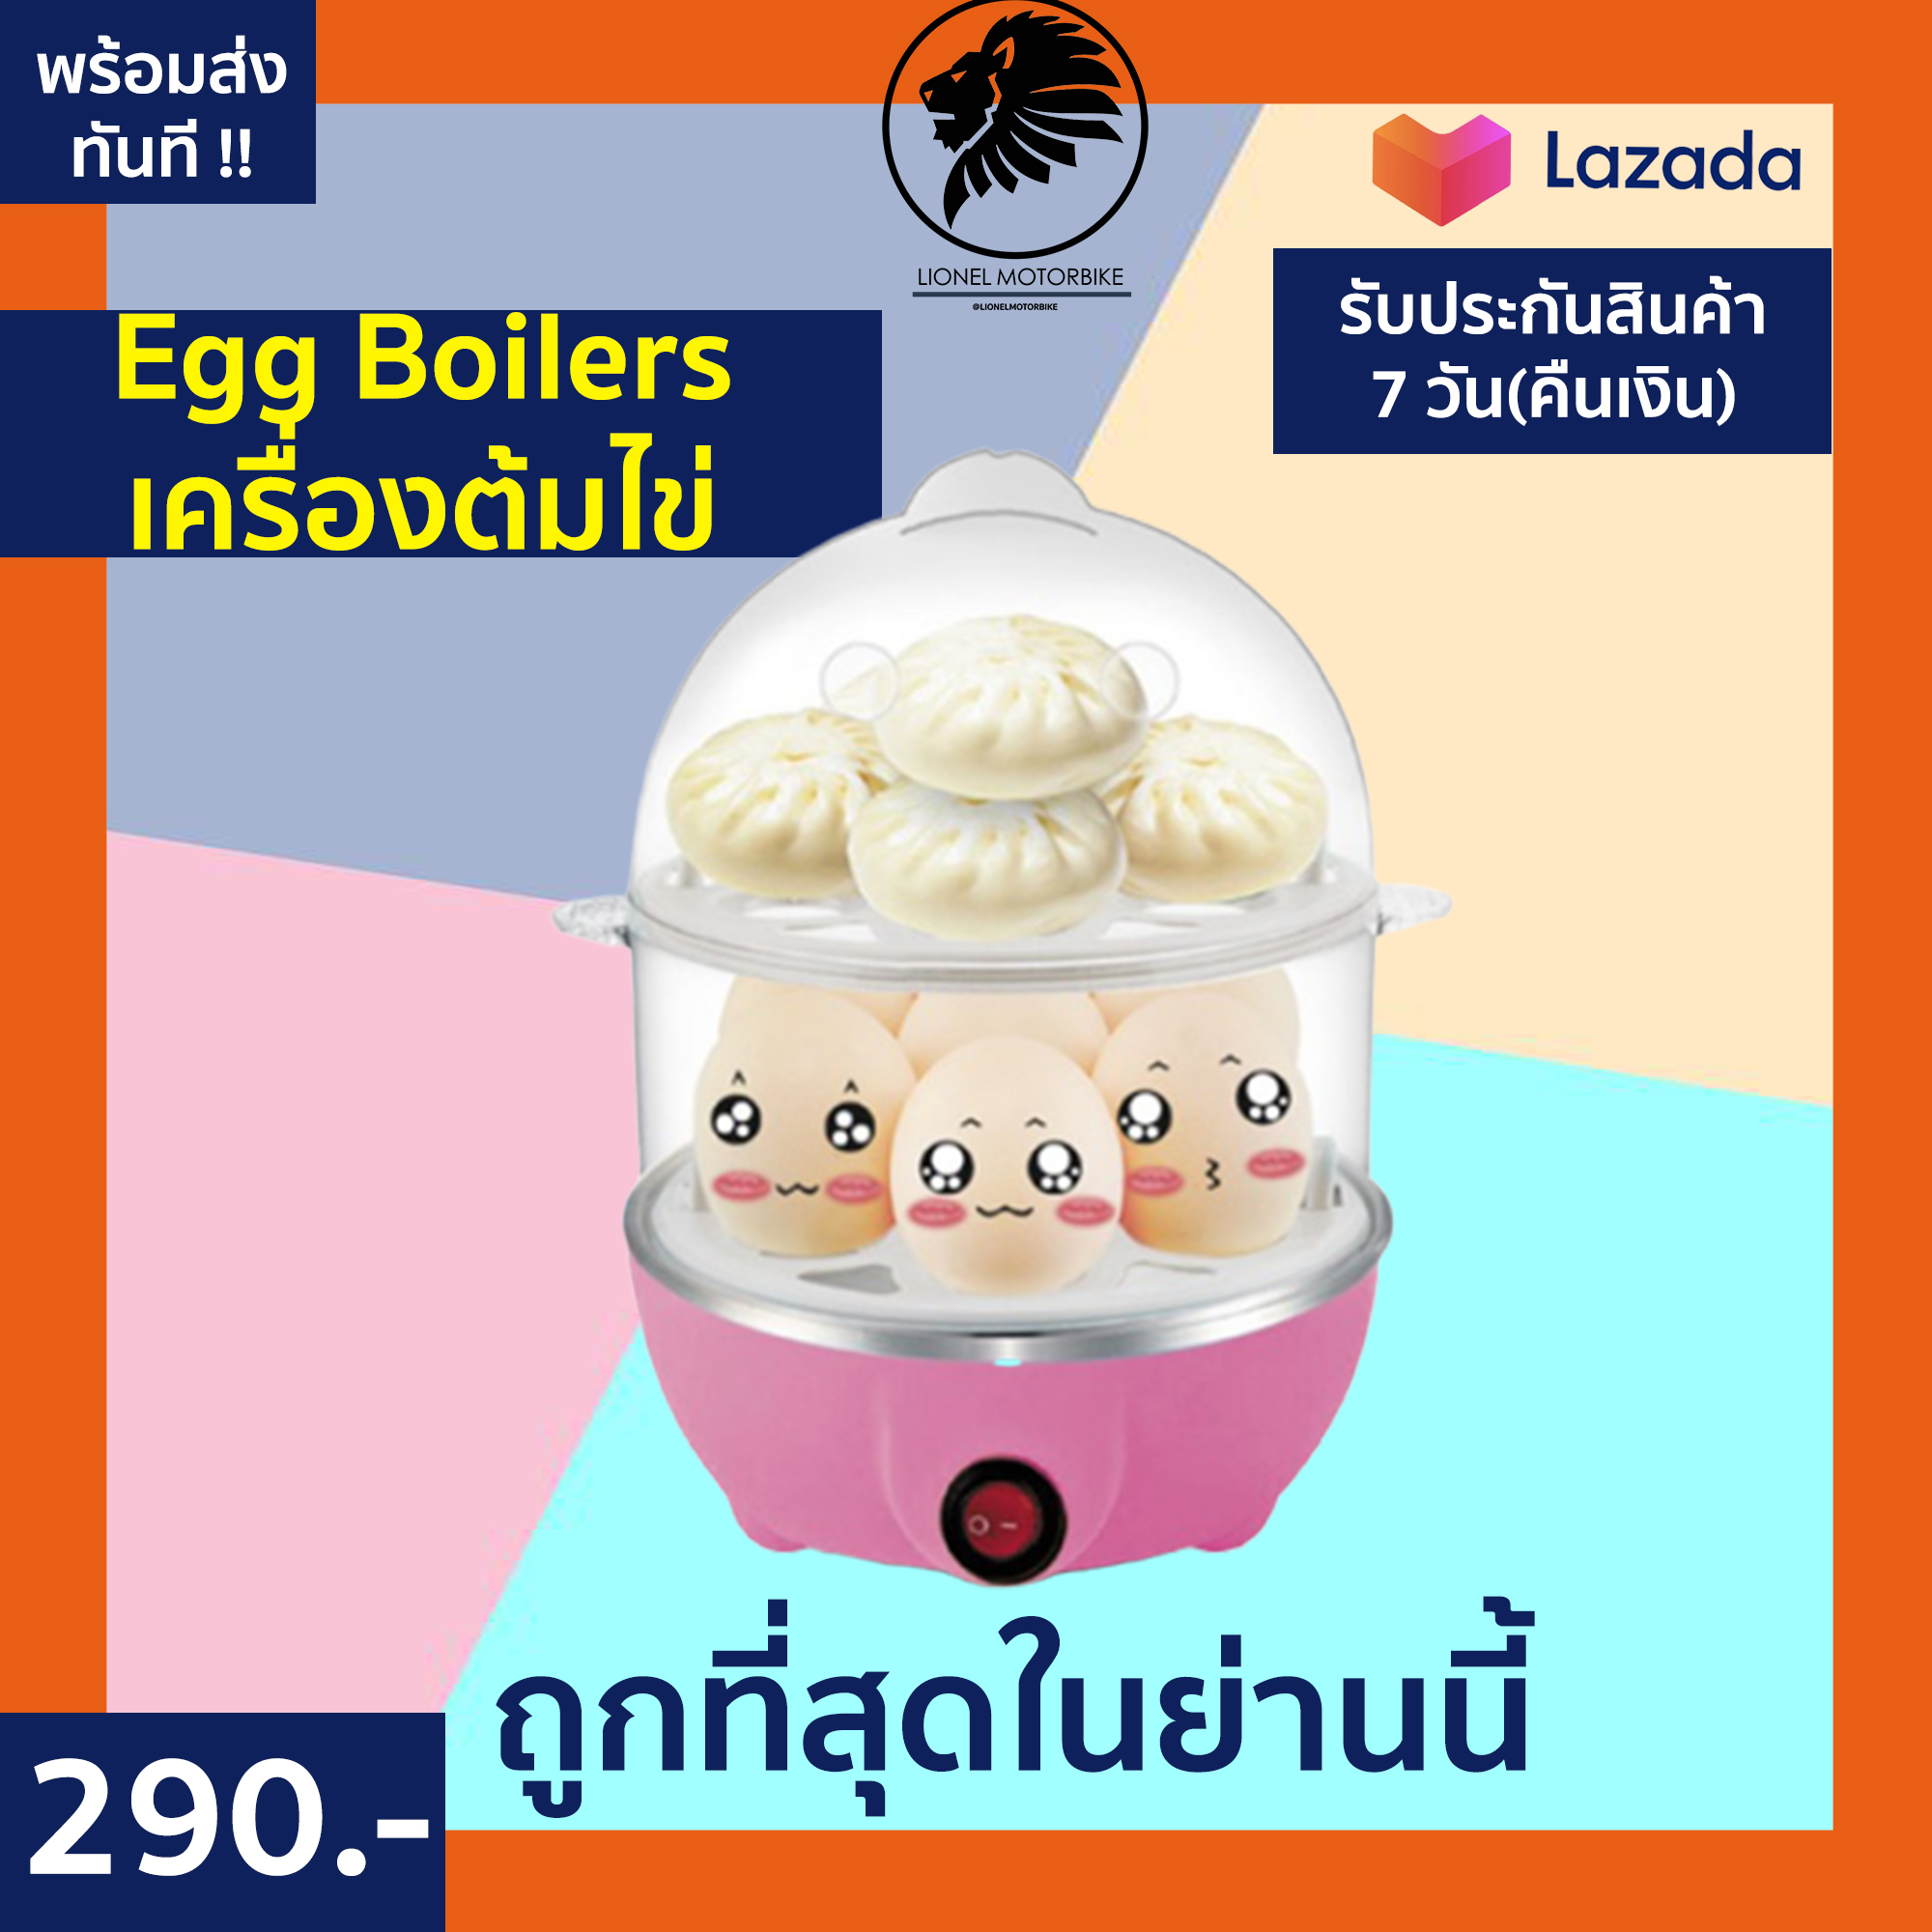 (ชำระเงินปลายทาง) Egg Boilers เครื่องต้มไข่ หม้อนึ่งอเนกประสงค์ 2 ชั้น หม้อต้มไข่ เครื่องทำไข่ลวก เครื่องต้มไข่ไฟฟ้า หม้อต้มไข่ไฟฟ้า